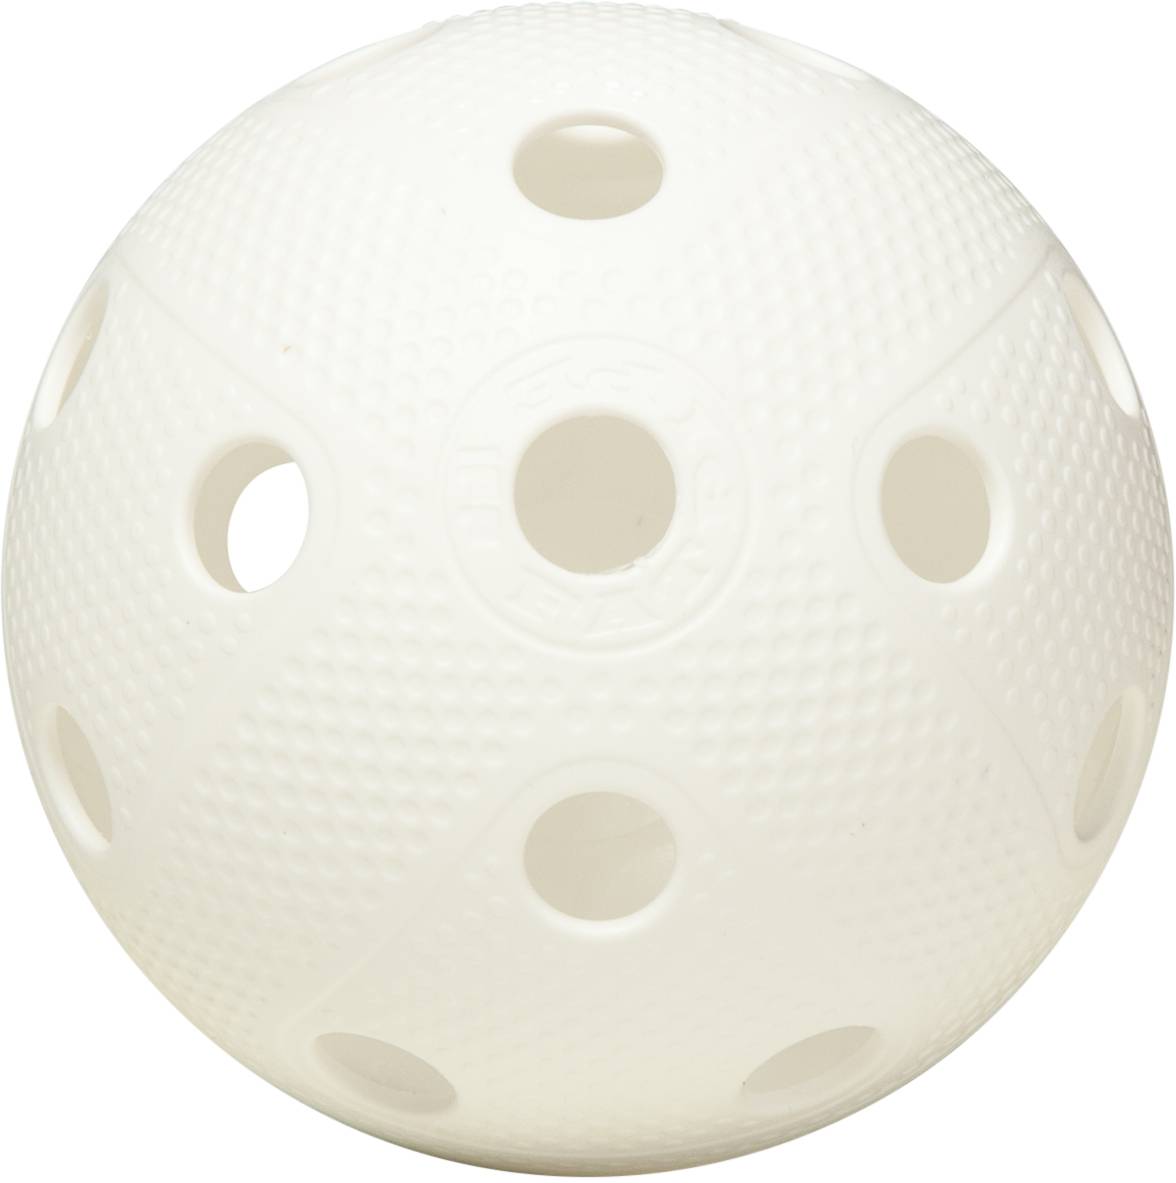 Floorball ball